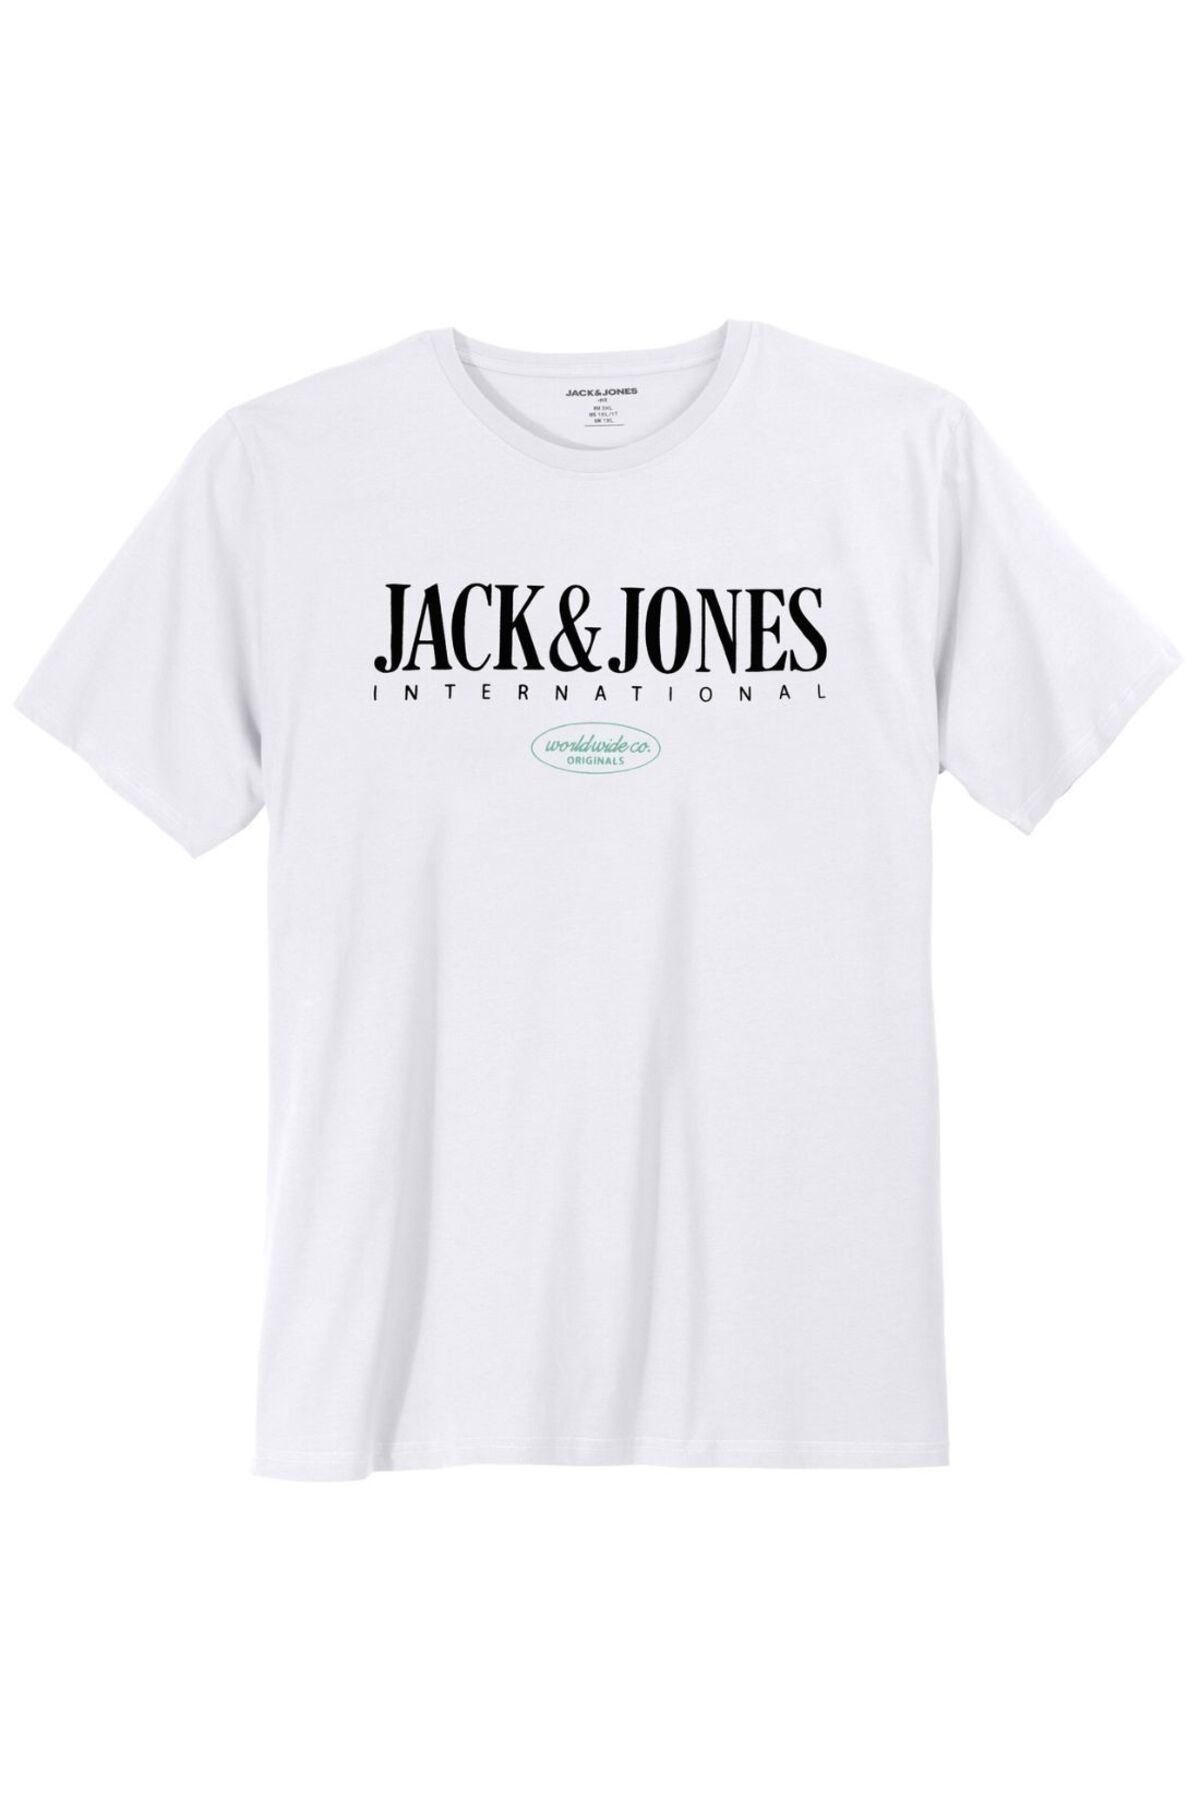 Jack & Jones Jorlucca Tee Ss Crew Neck 1 Fst Pls Erkek Beyaz Büyük Beden Tshirt 12257587-01